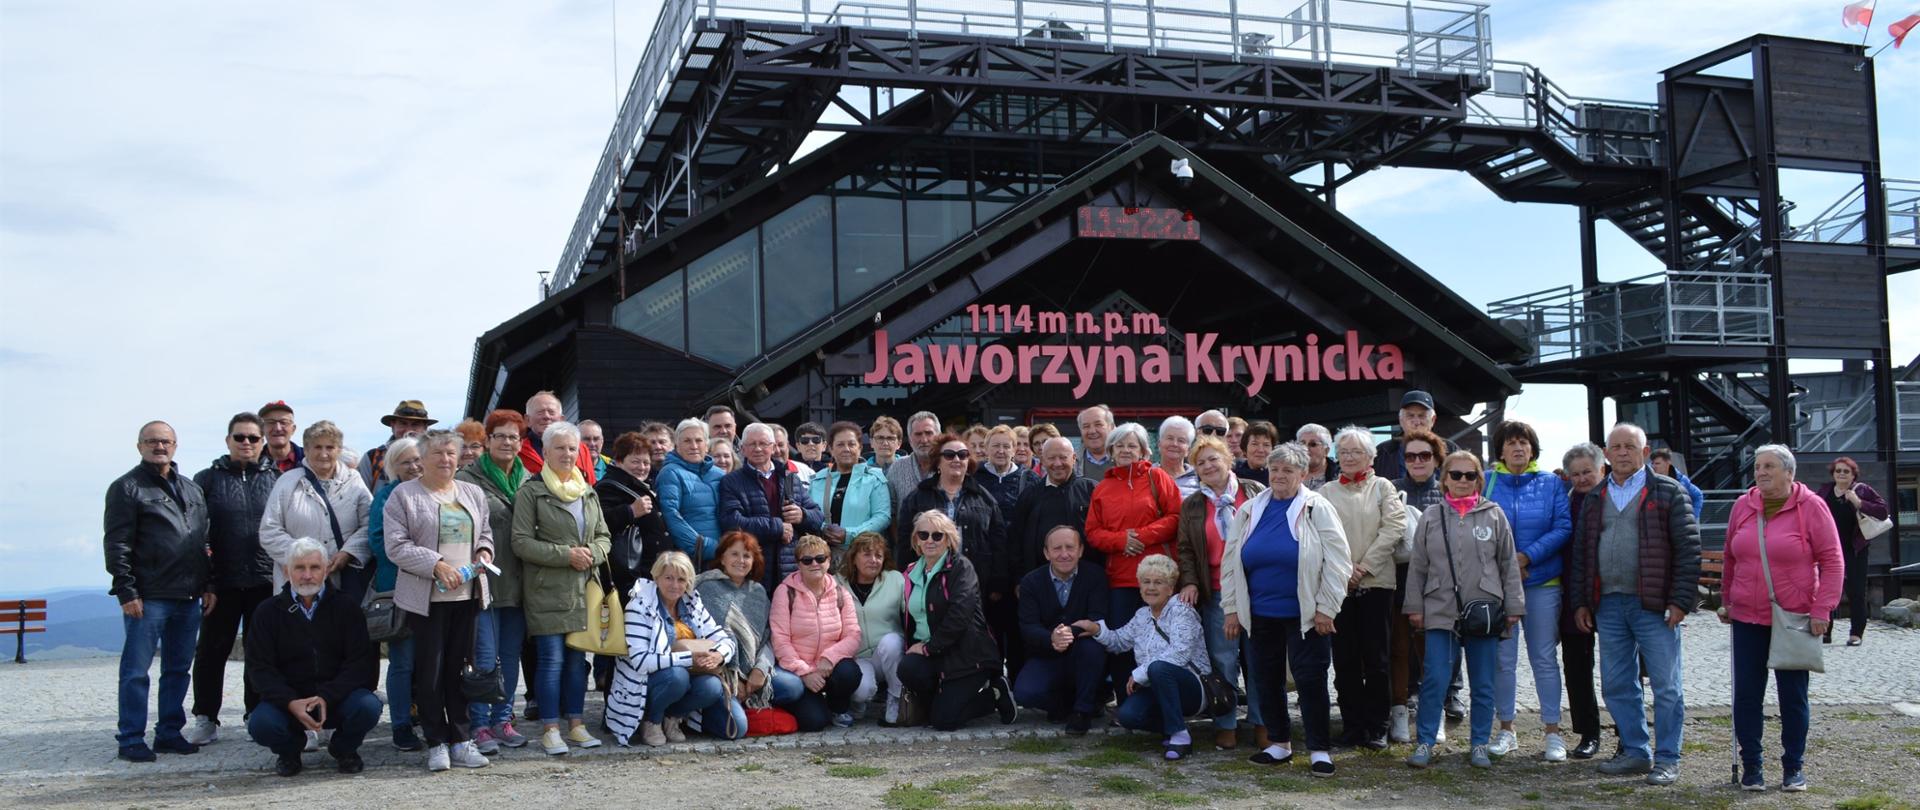 Klub Seniora na wycieczce w Krynicy Zdrój